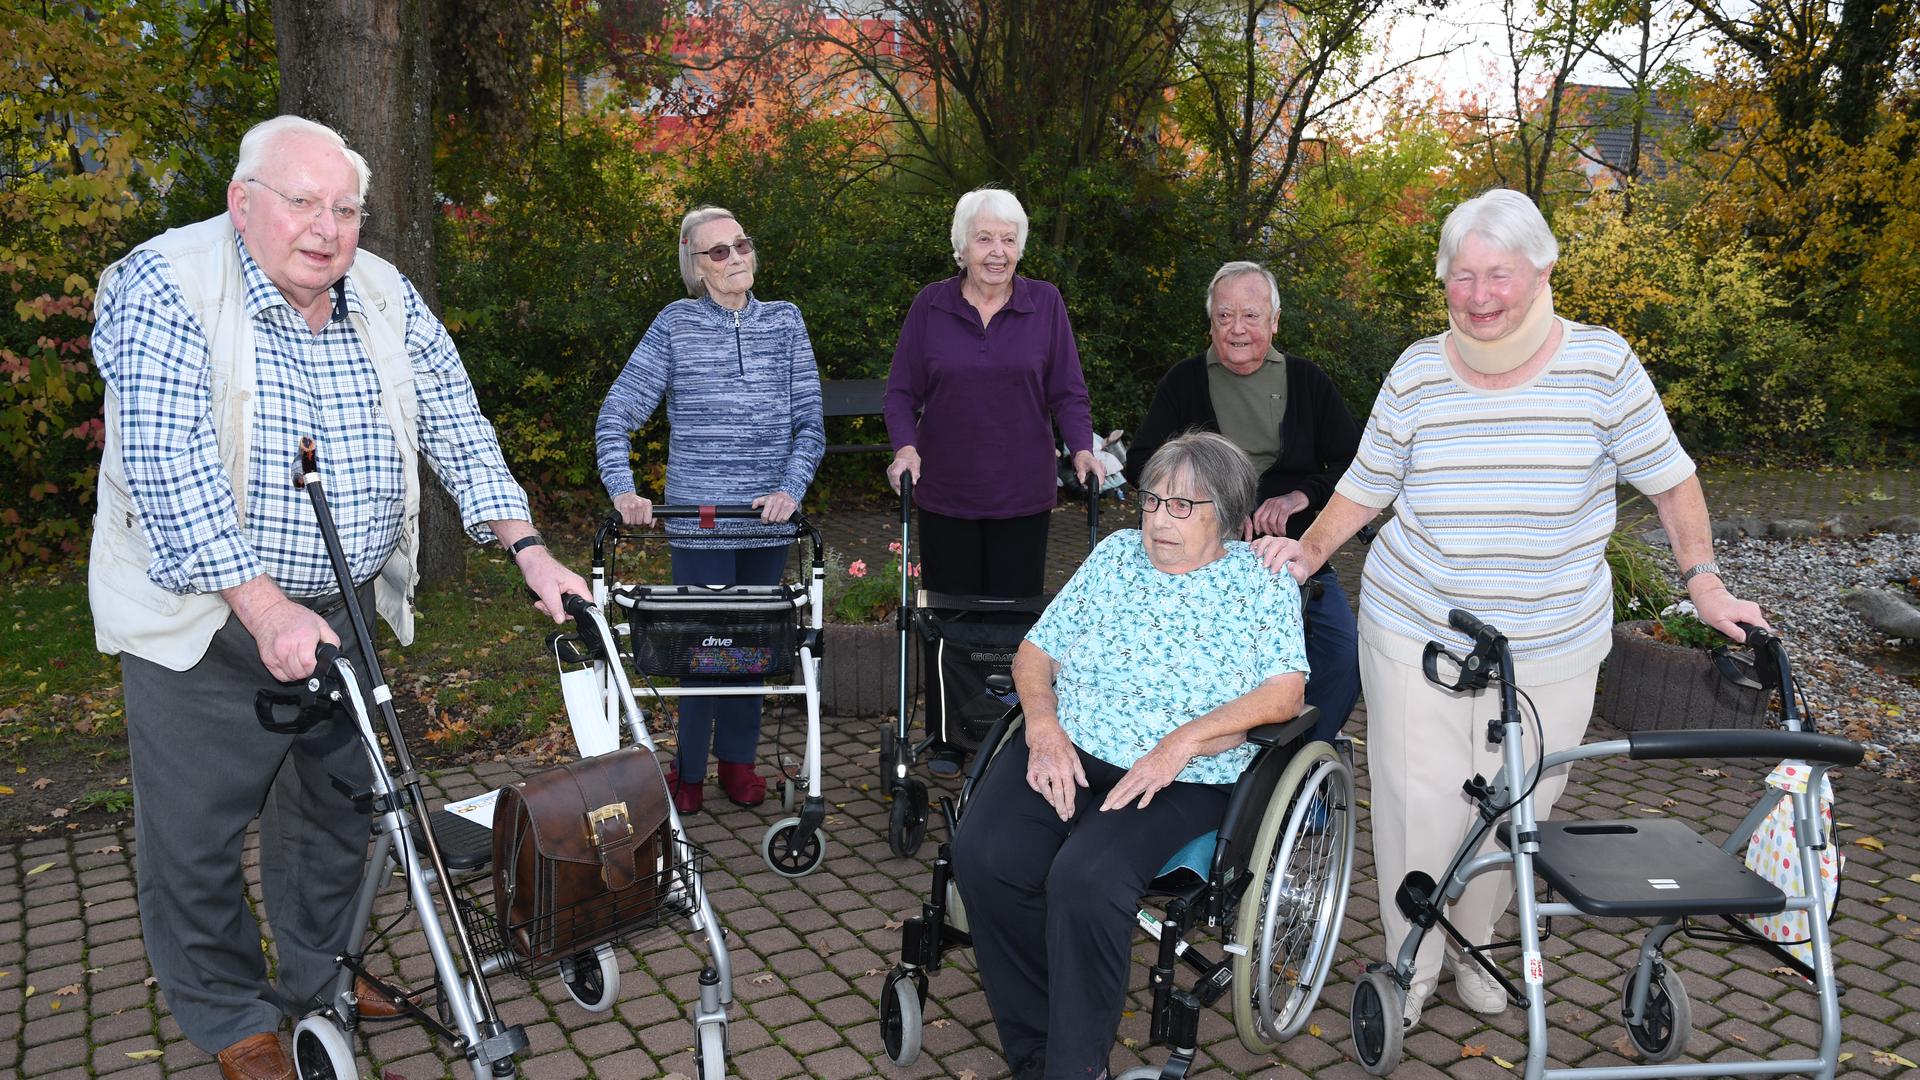 Sechs Heimbewohner sind miteinander im Garten. Fünf stützen sich auf Rollatoren, eine Dame sitzt im Rollstuhl.